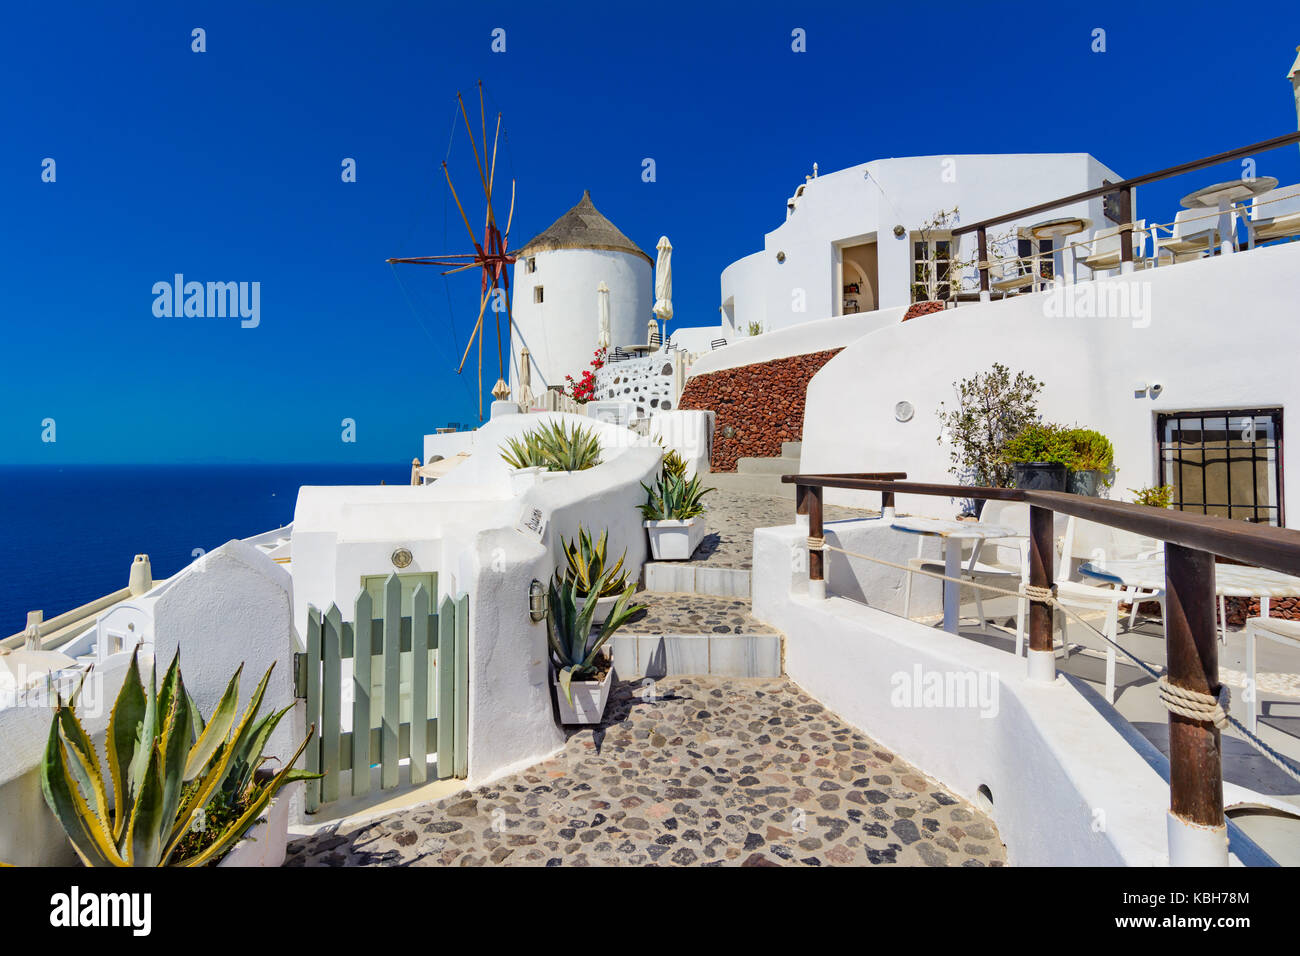 La cittadina di Oia - Santorini Island, Grecia. famosi mulini a vento sulla scogliera, cobled di strade e di case bianche sulla caldera, il mare Egeo. Foto Stock